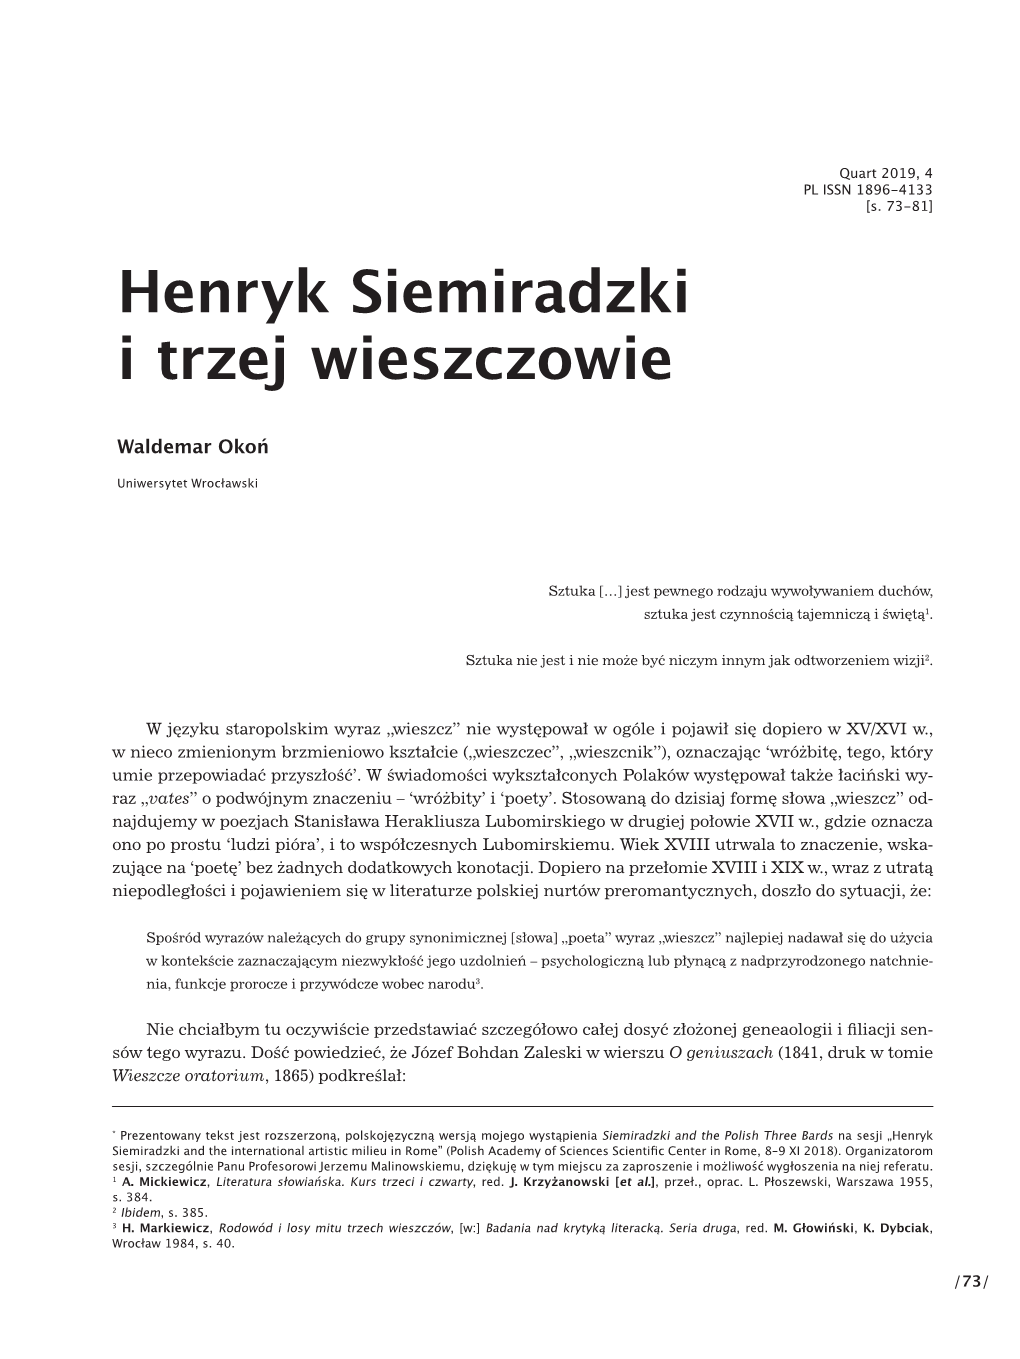 Henryk Siemiradzki I Trzej Wieszczowie